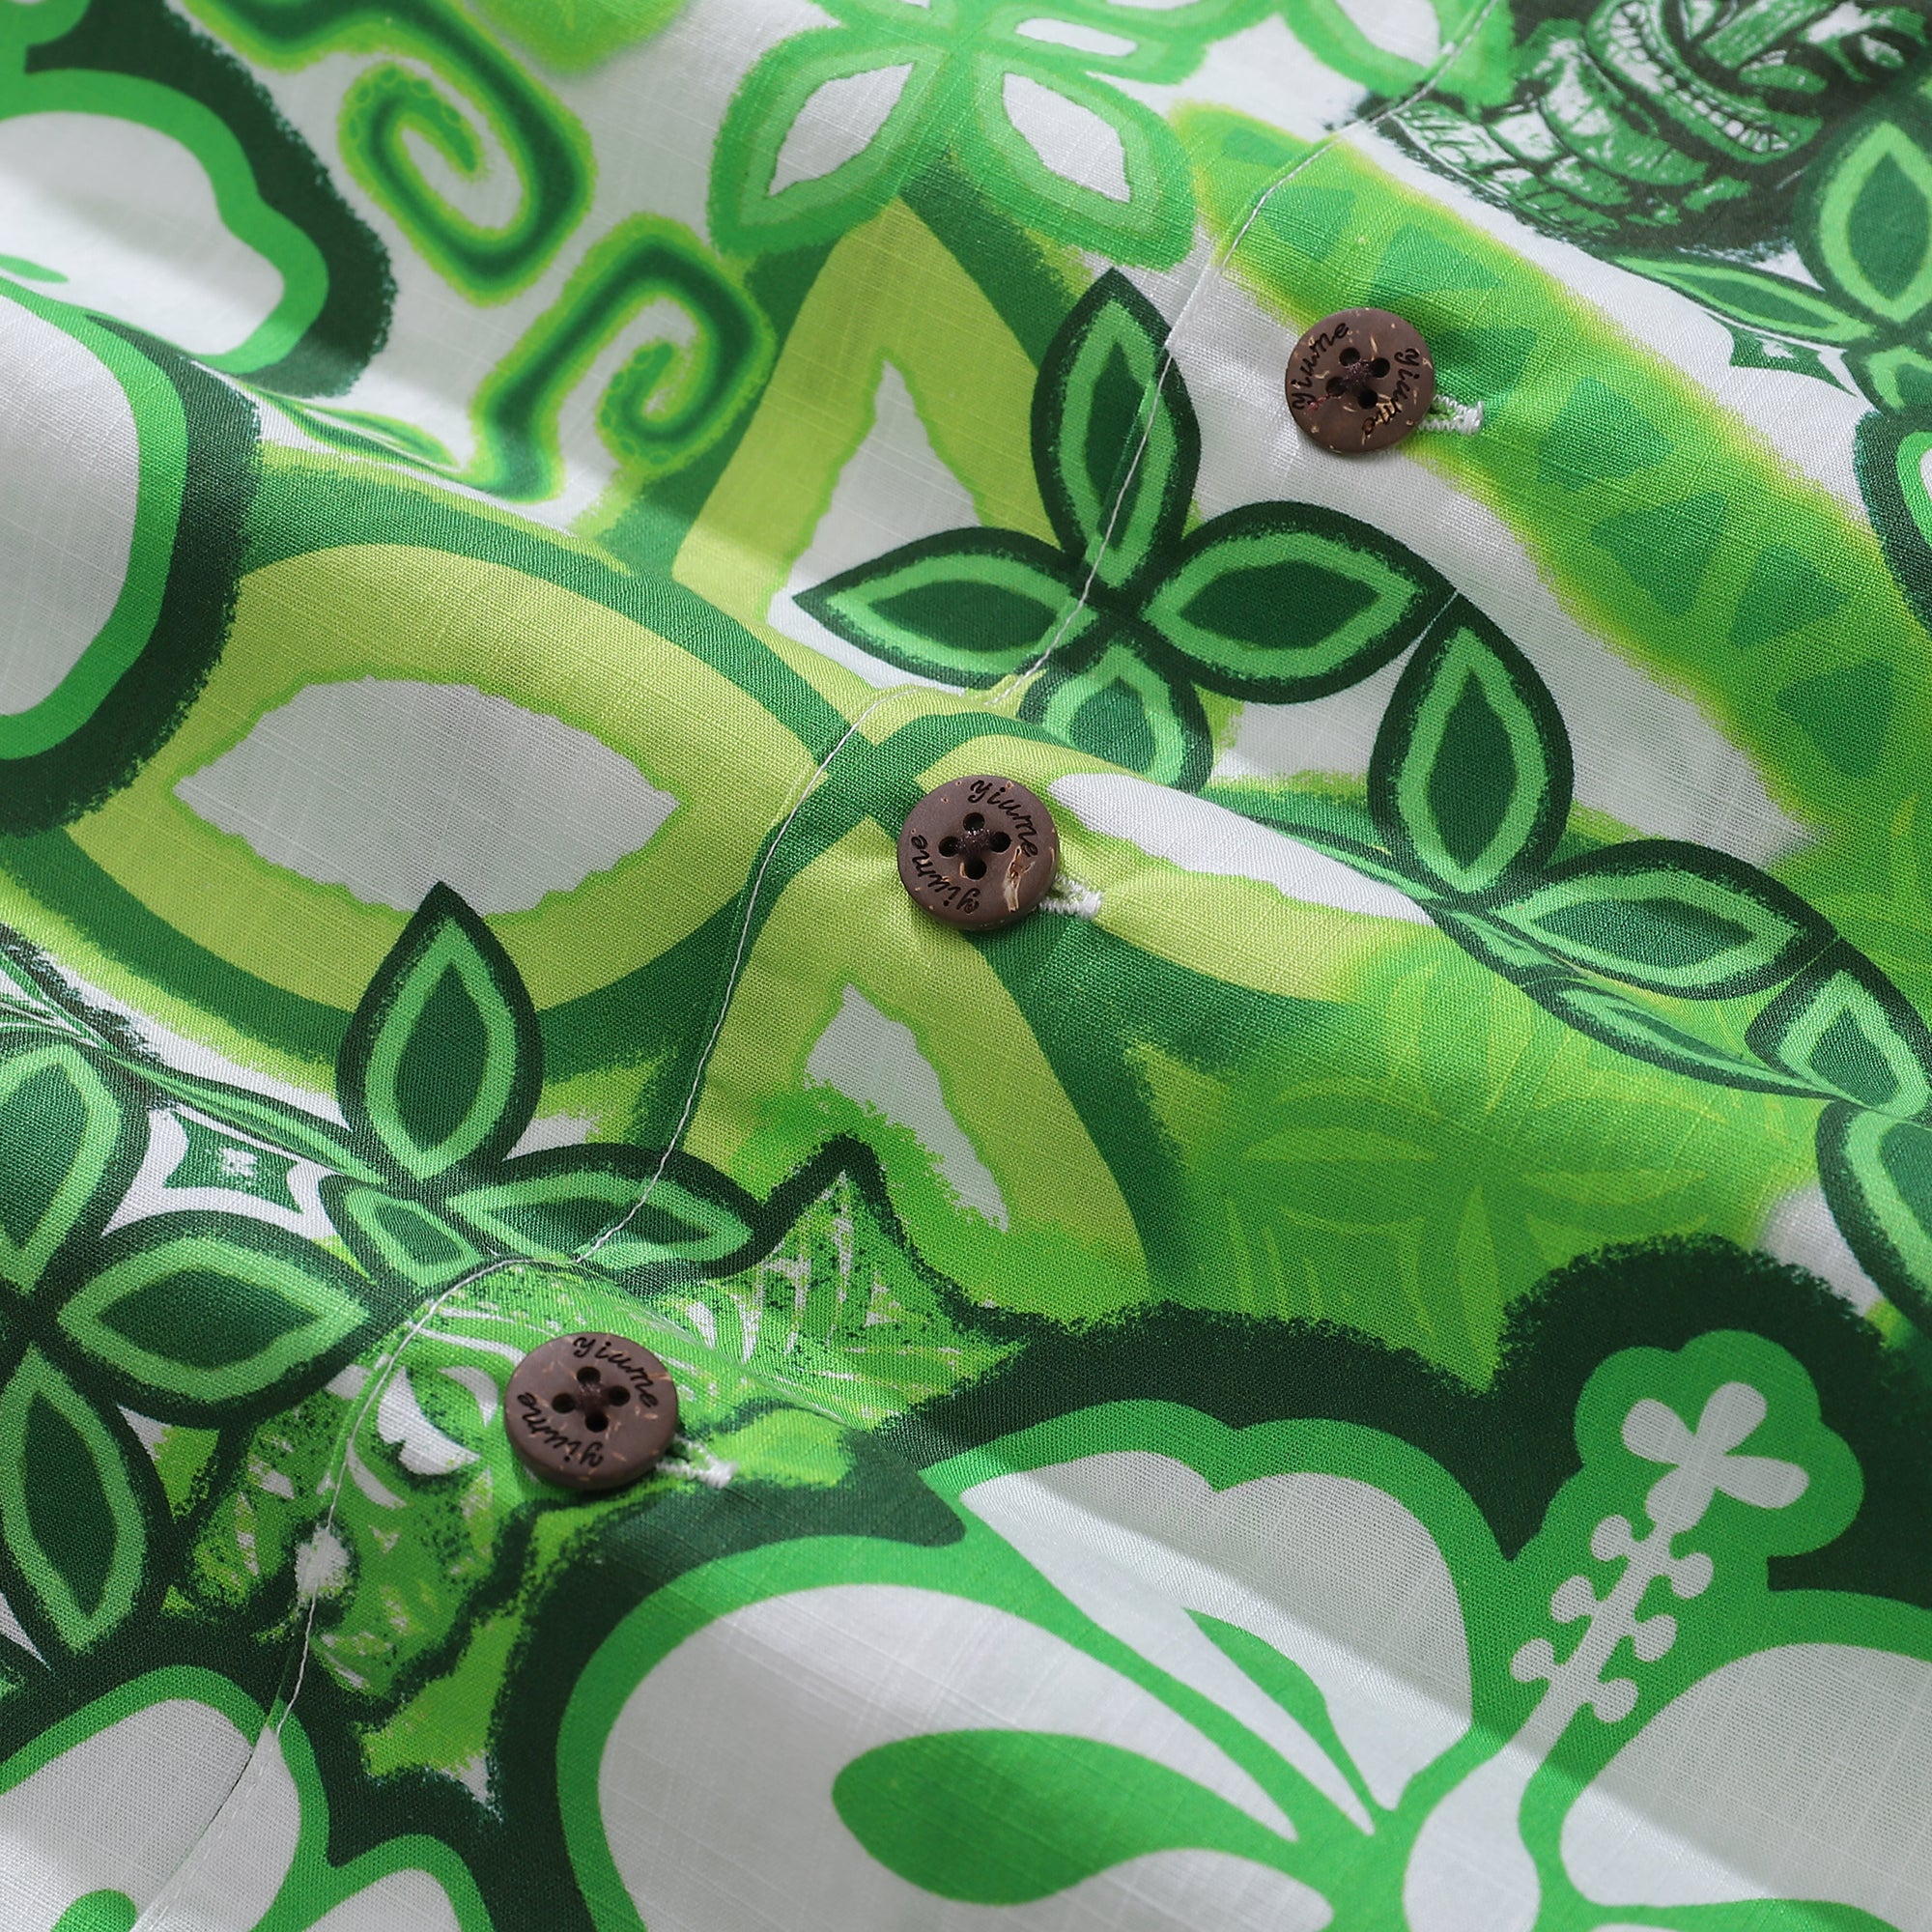 Hawaiihemden für Herren Tikirob Designerhemd Totem 100 % Baumwolle – Grün